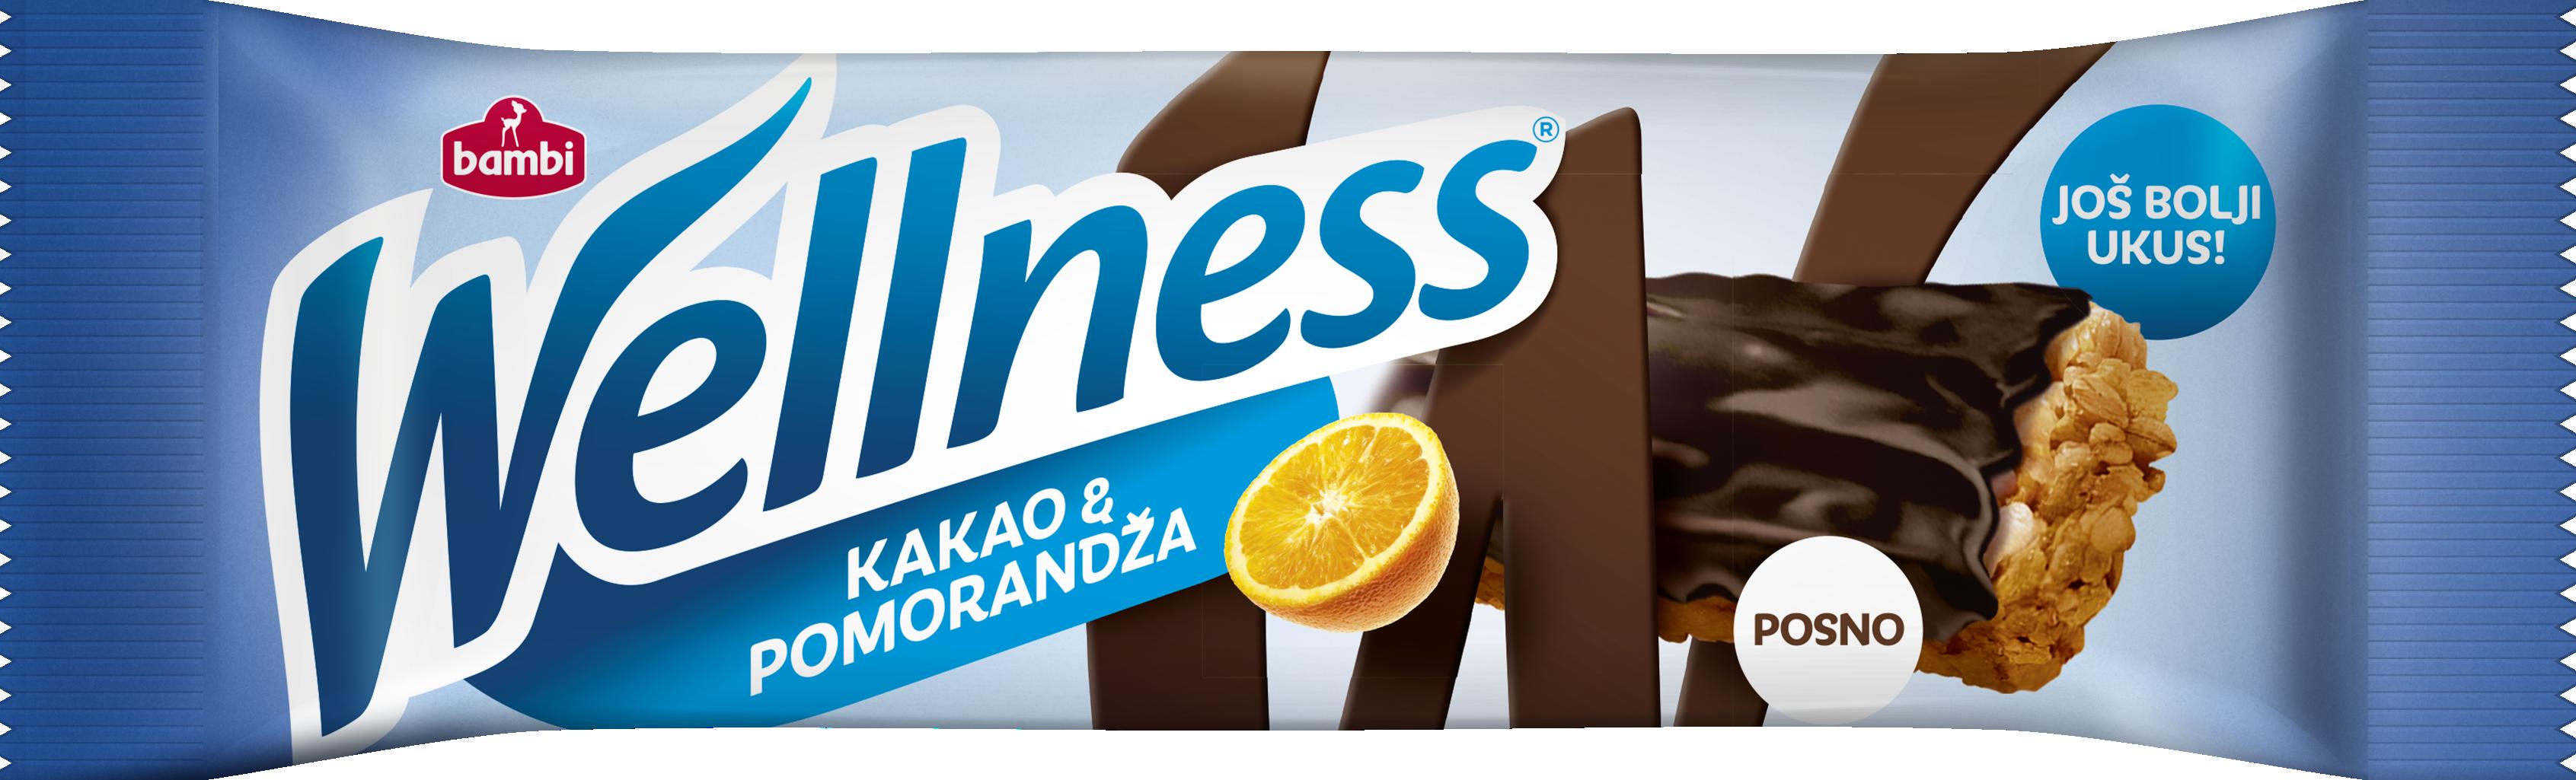 Slika za Integralna čokoladica Wellnes kakao i pomorandža 23g